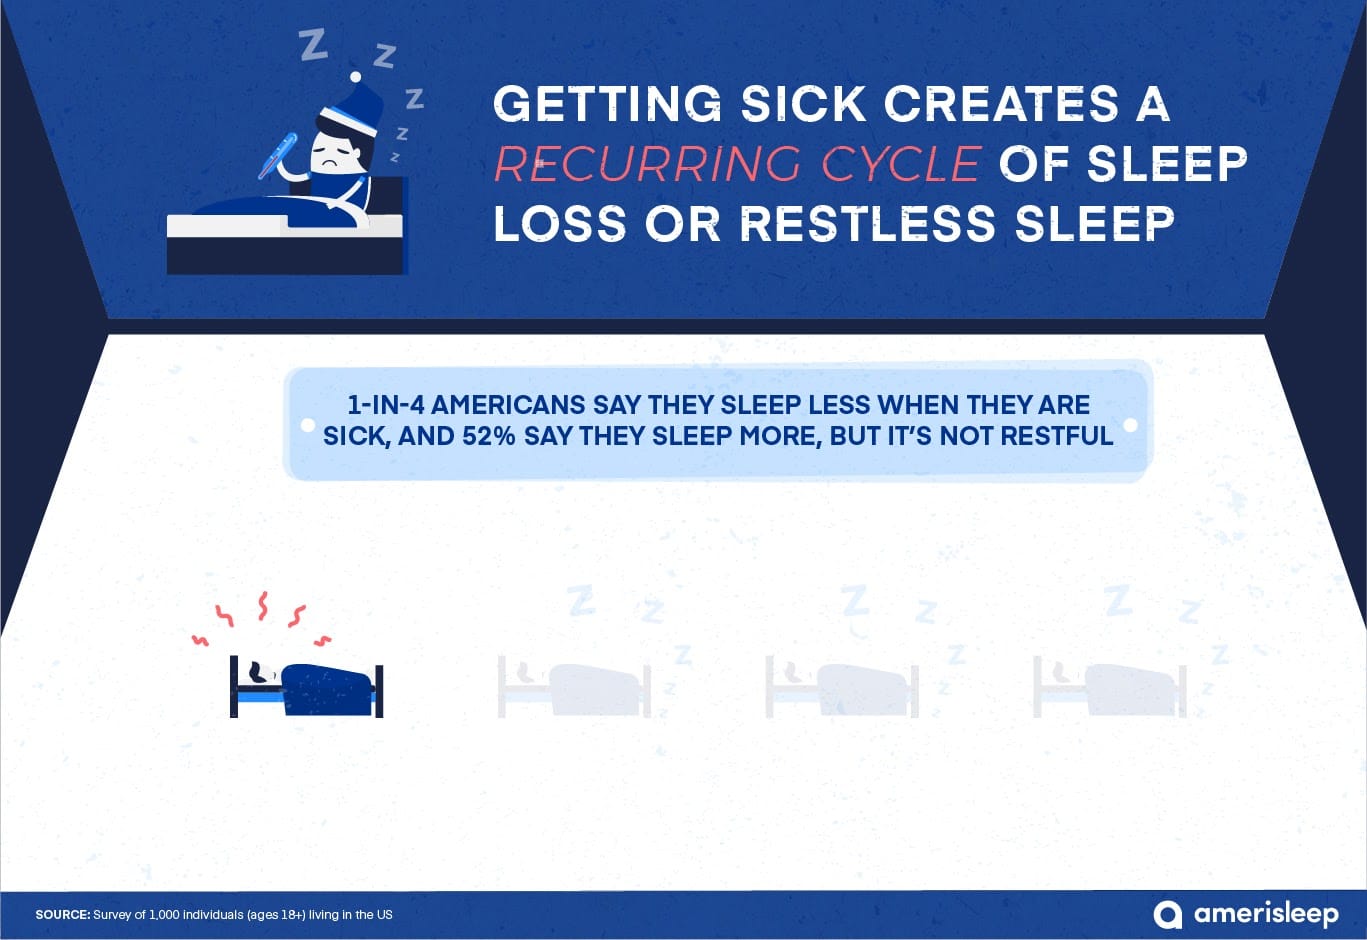 sickness and restless sleep